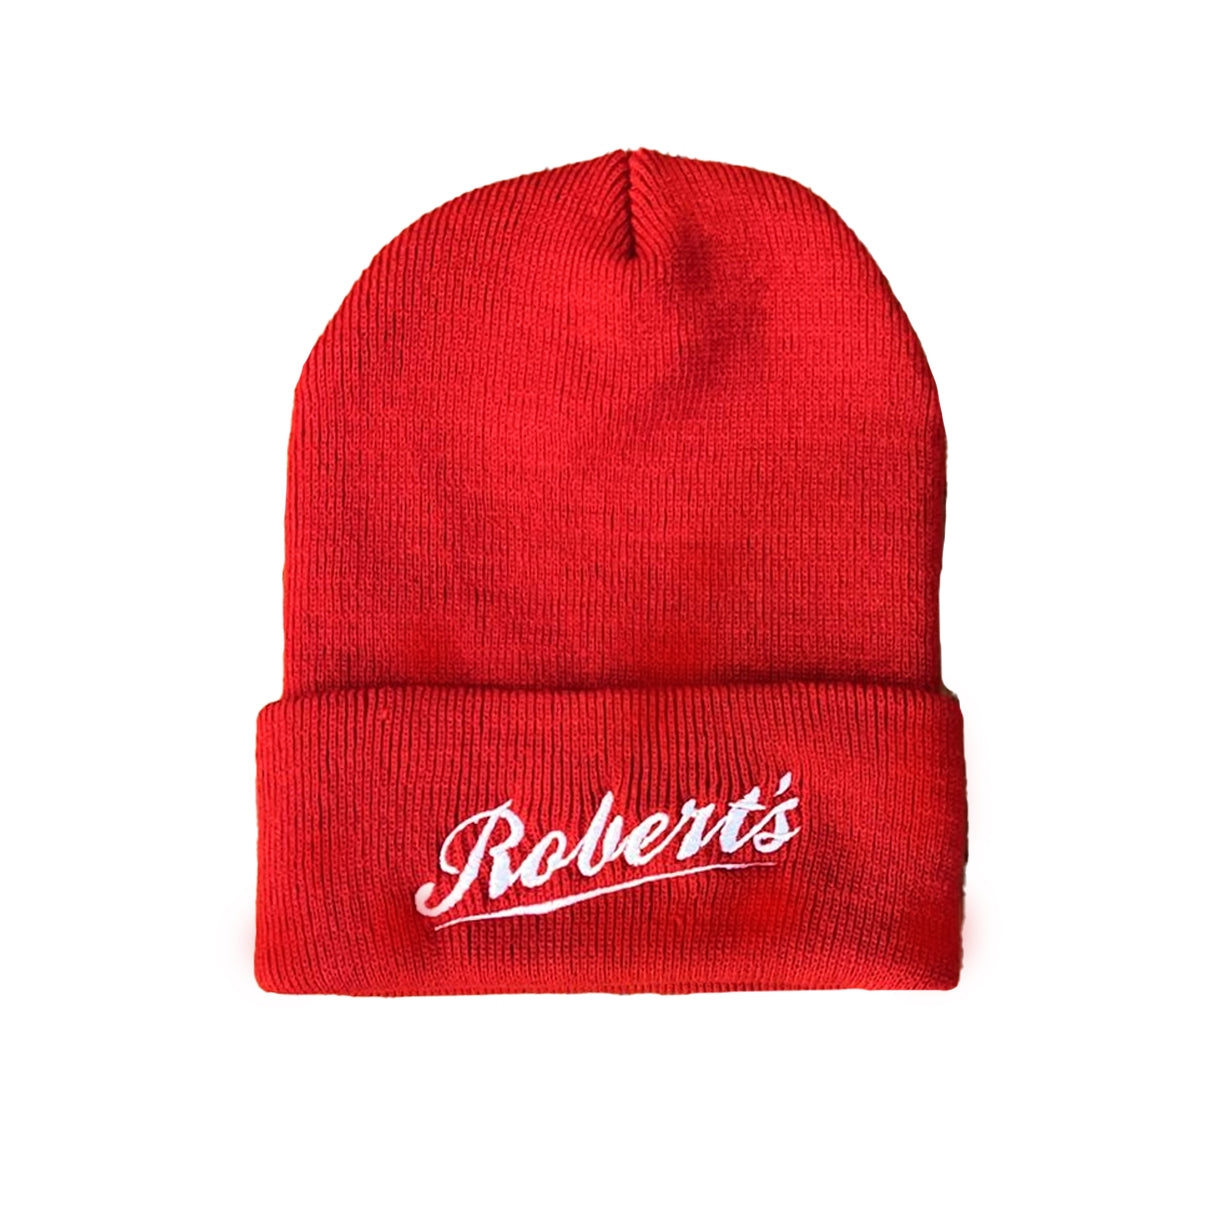 Robert's Red Beanie